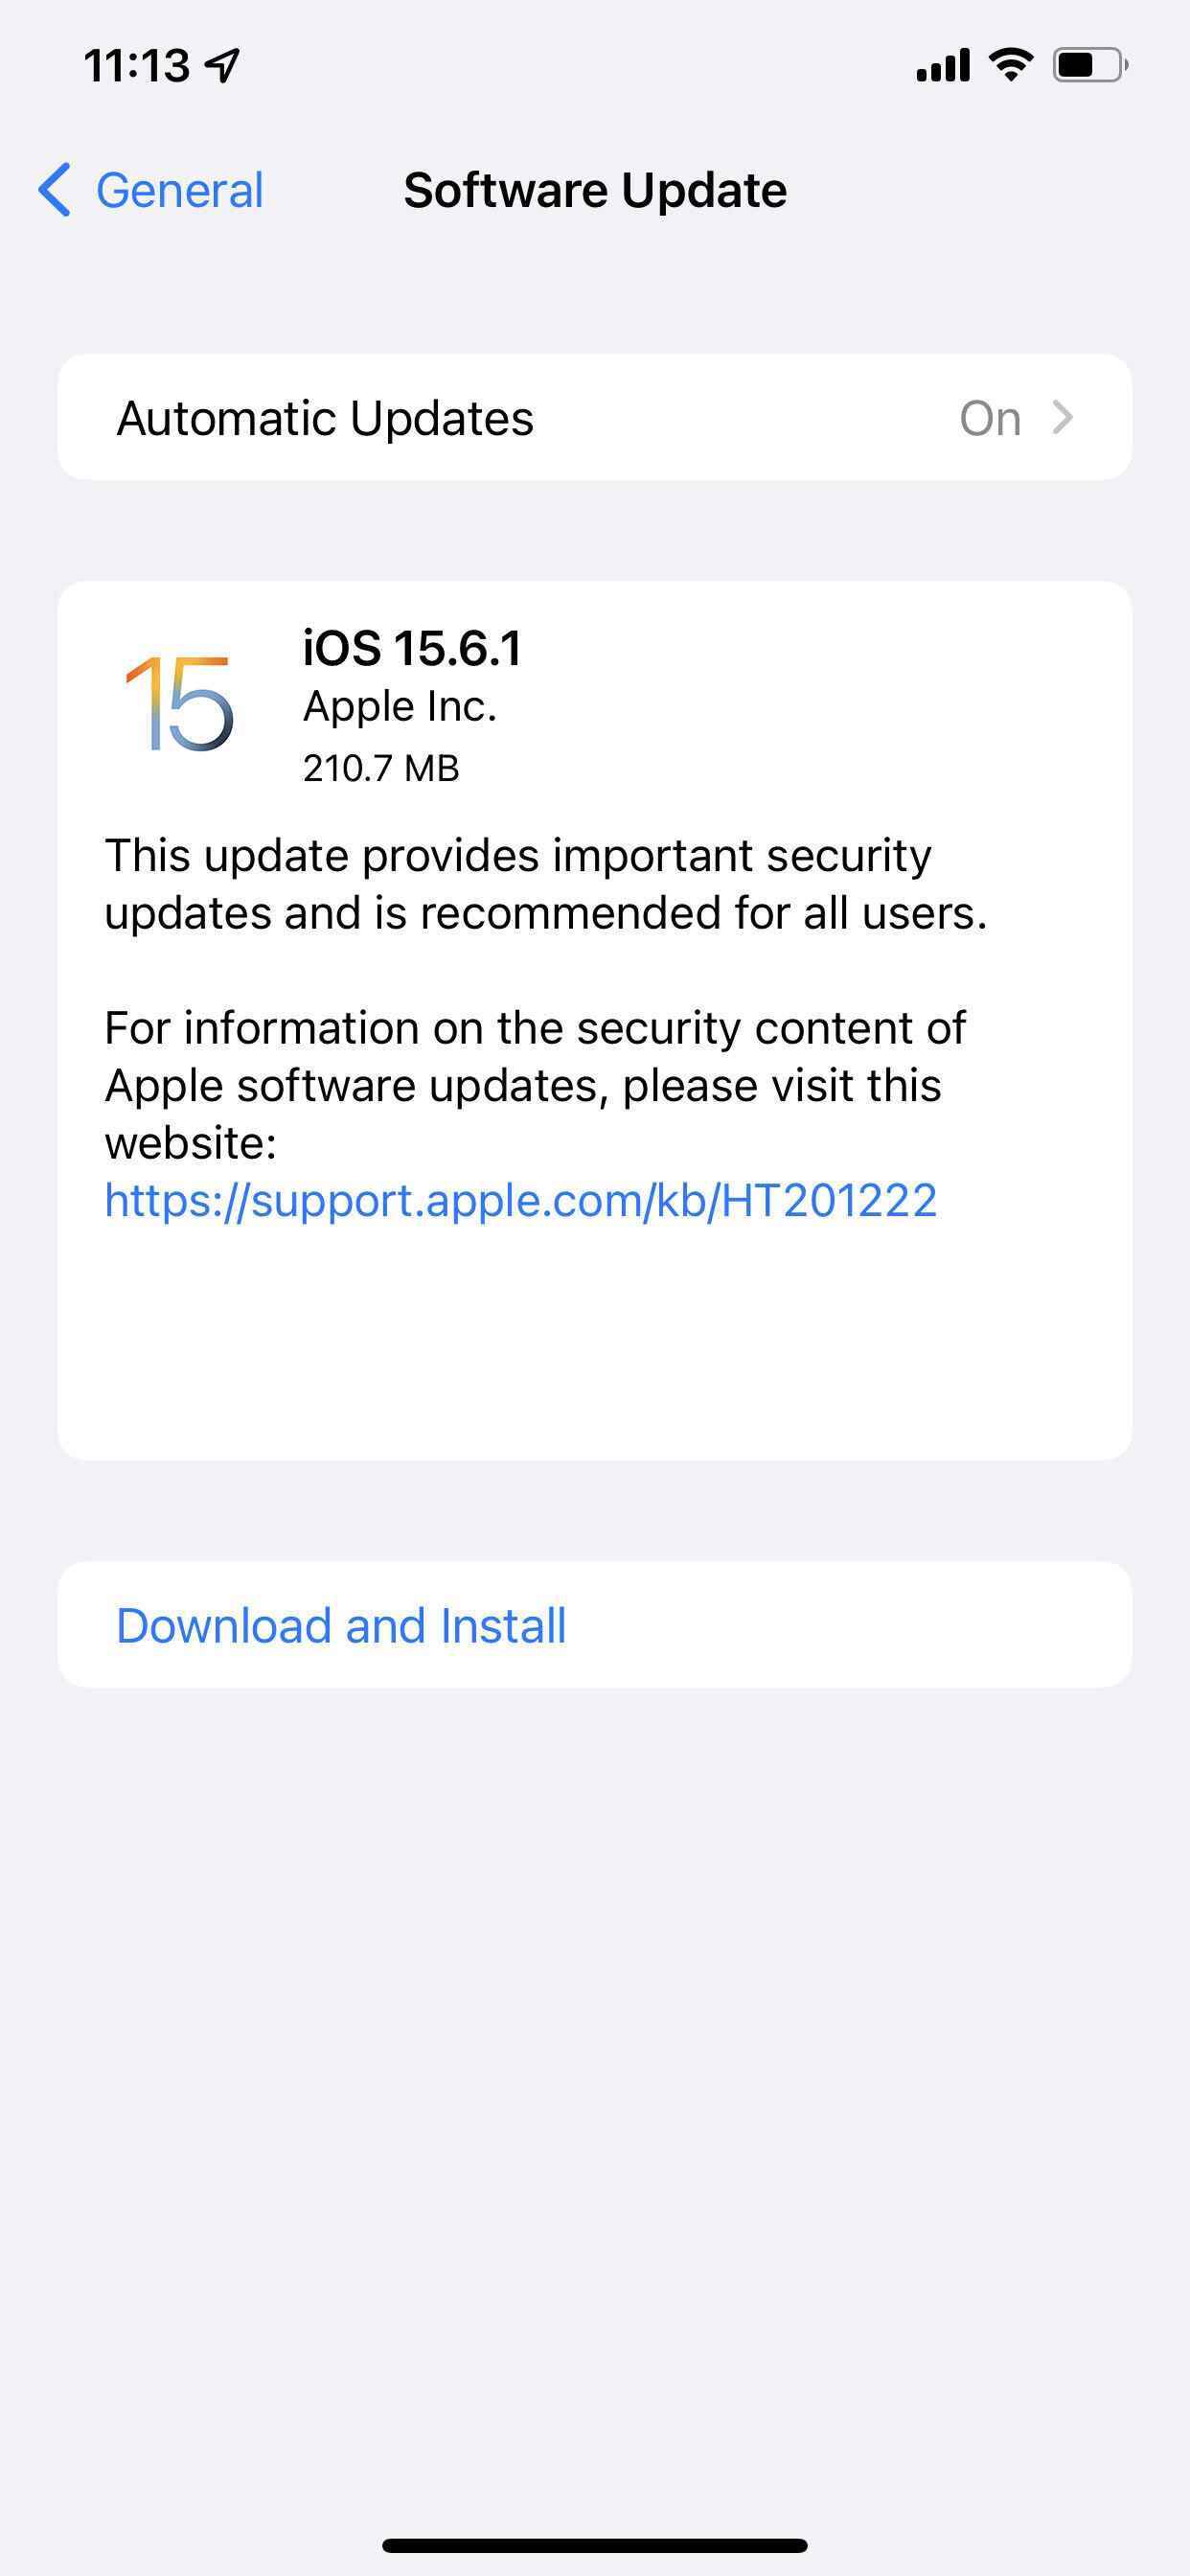 Büyük bir güvenlik açığını düzeltmek için iPhone ve iPad'inizi iOS 15.6.1'e güncelleyin - iPhone, iPad, iPod touch ve Mac'inizi hemen güncellemeniz gerekip gerekmediğini kontrol edin!